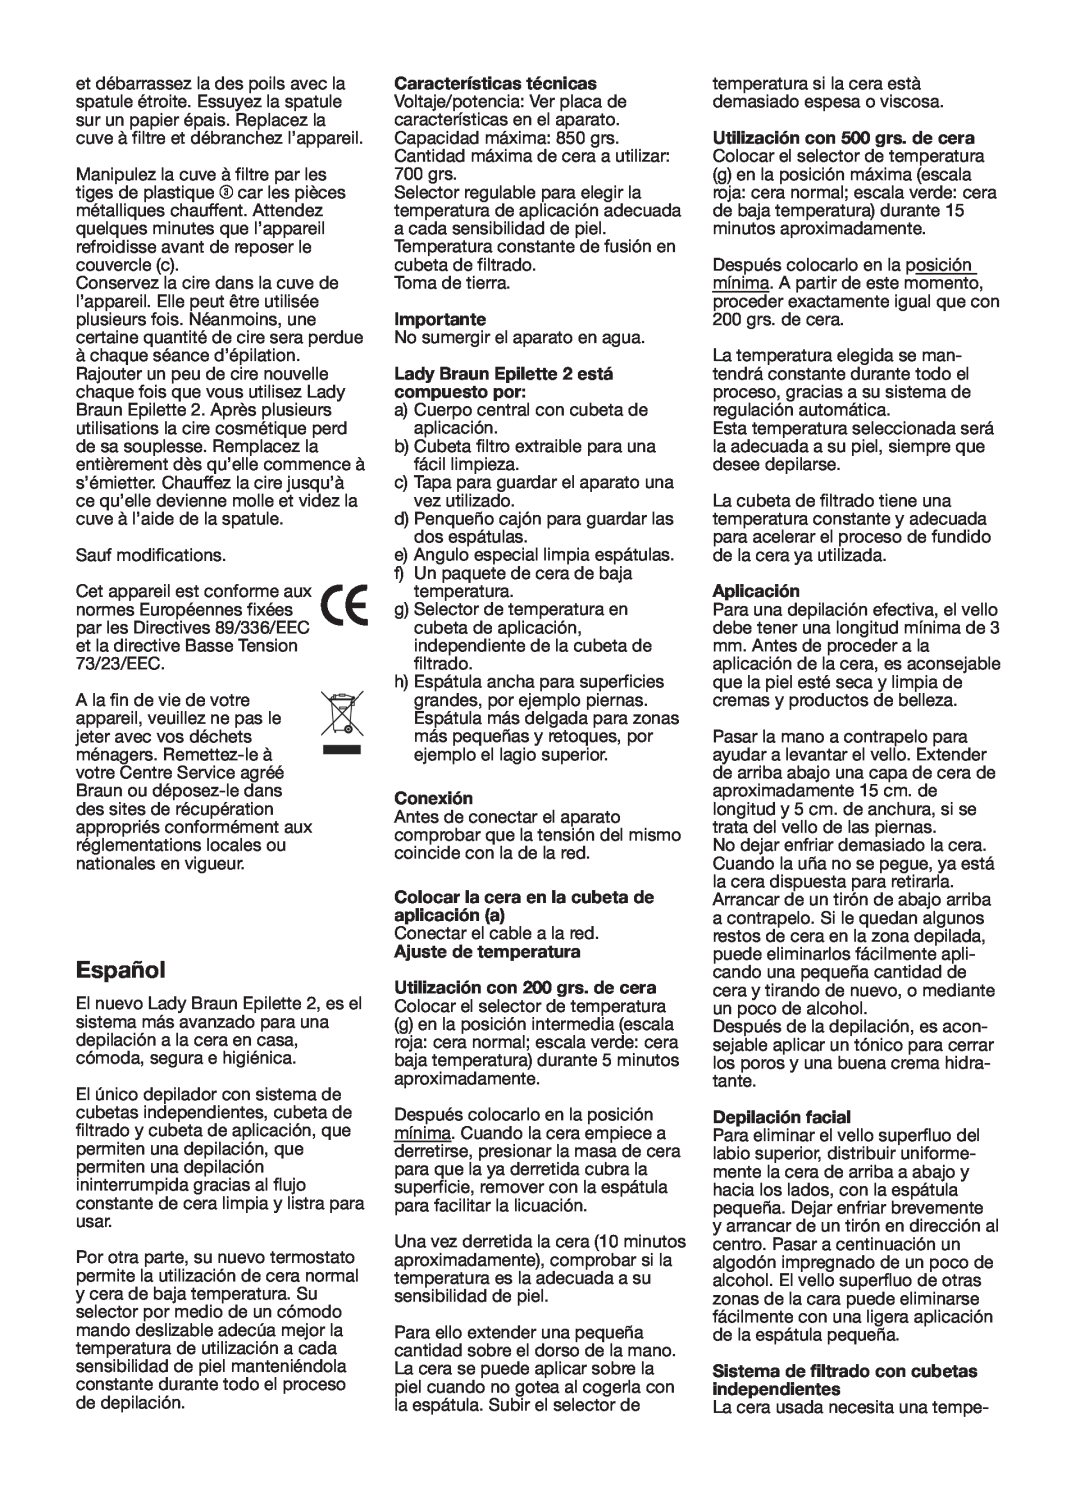 Braun CC20 manual Español, Importante, Lady Braun Epilette 2 está compuesto por, Conexión, Aplicación, Depilación facial 